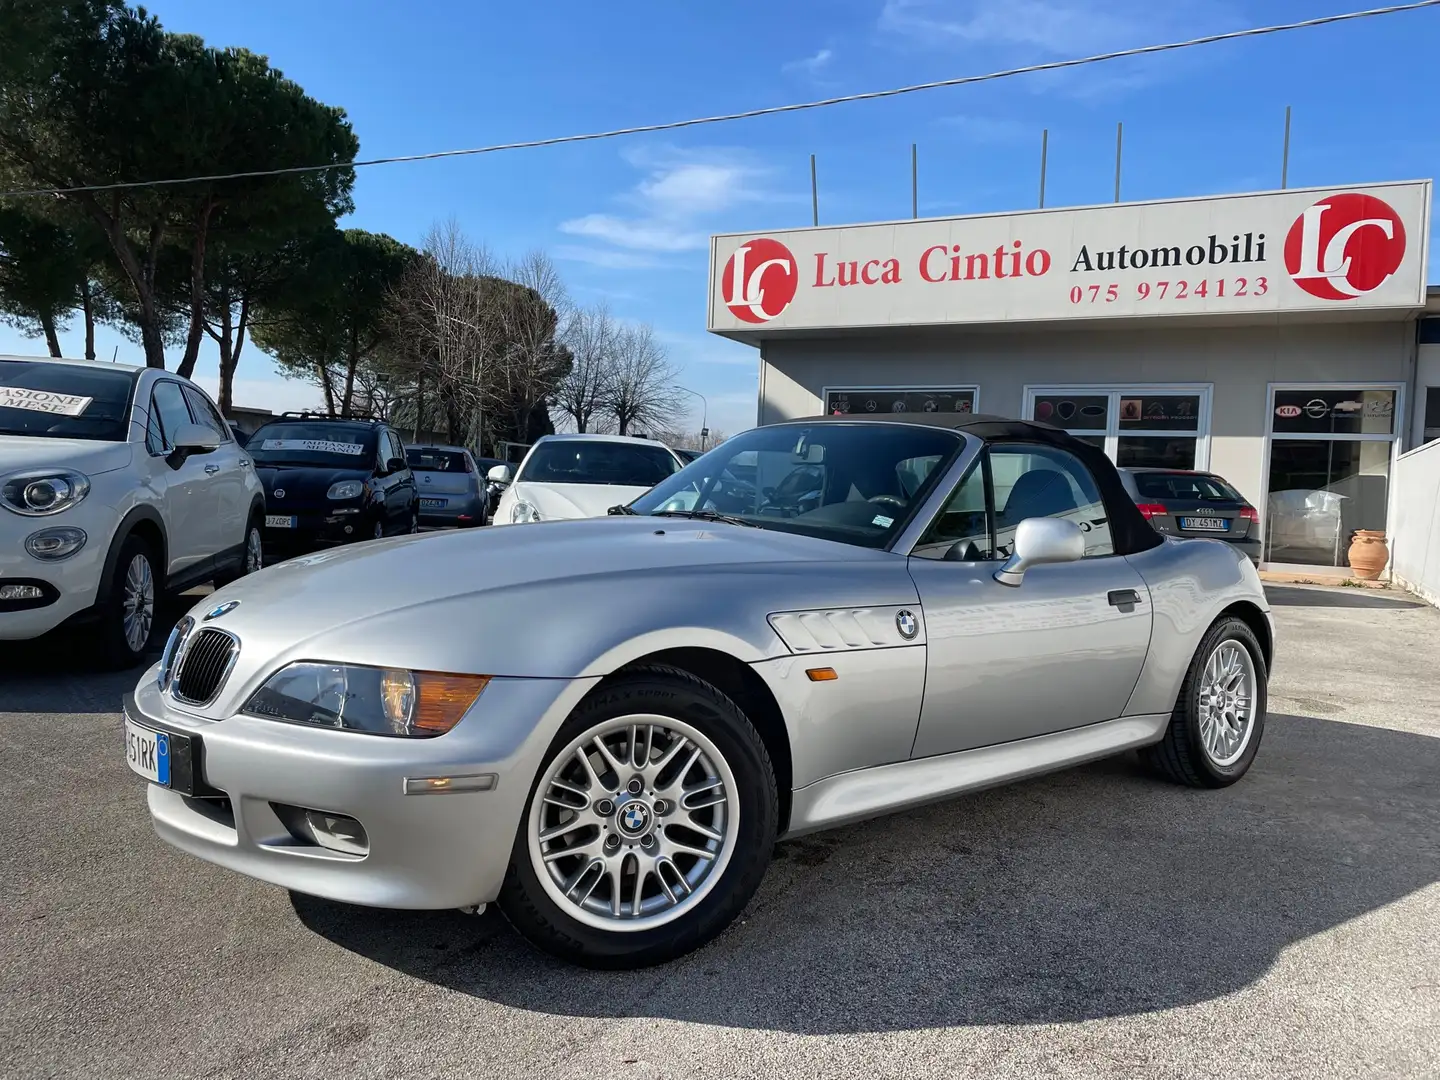 usato BMW Z3 Cabrio a Deruta - Perugia - Pg per € 14.500,-